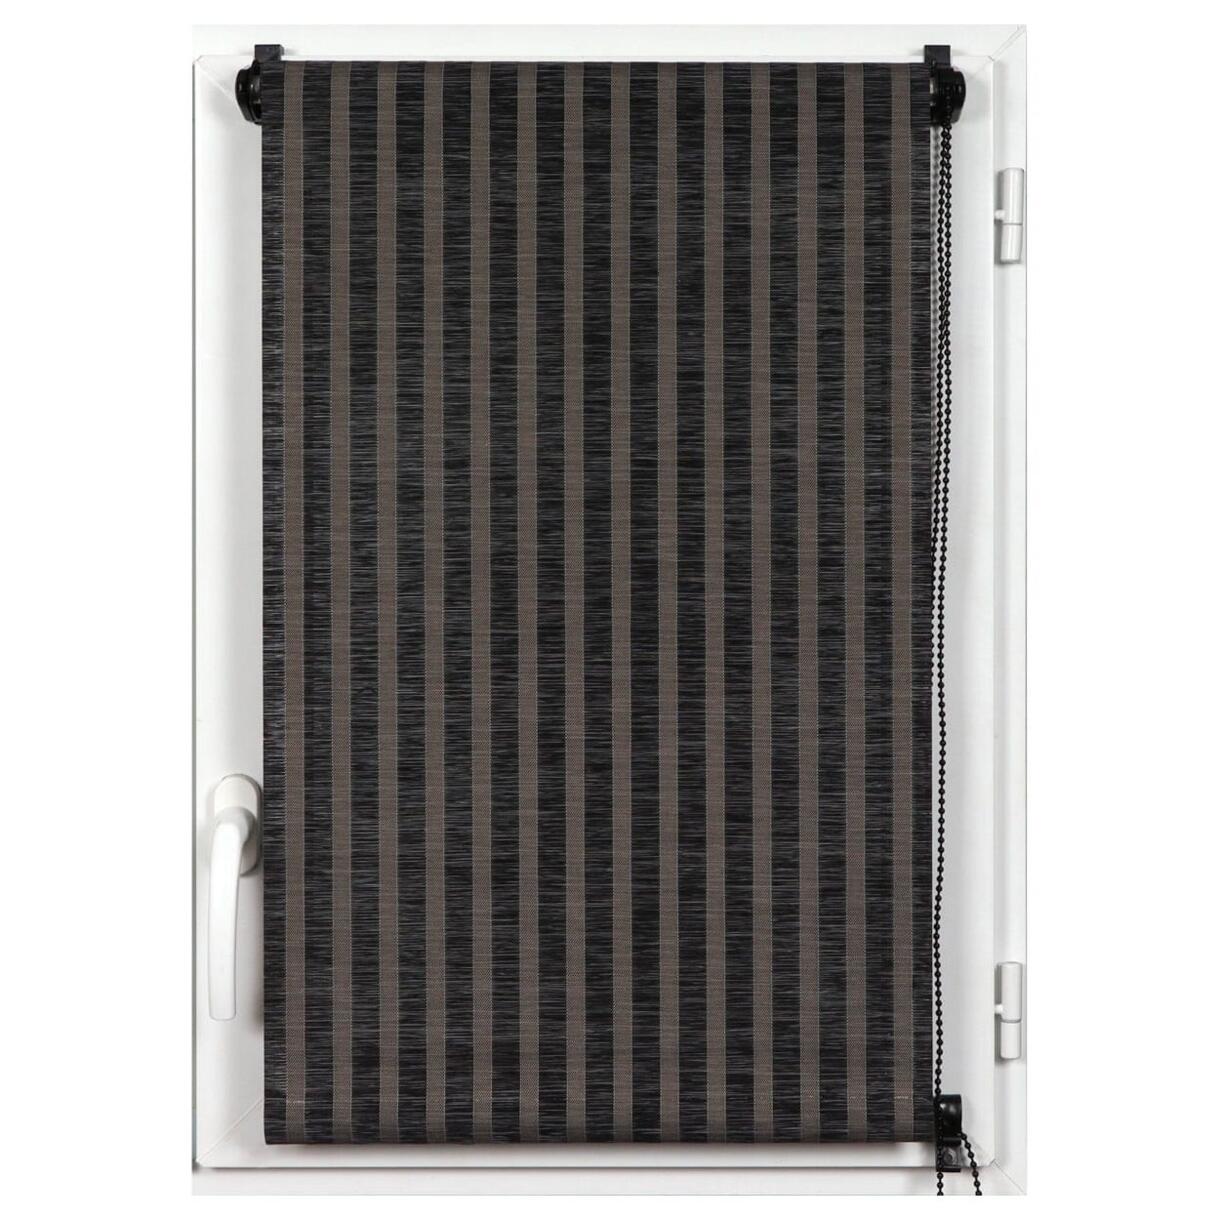 Tenda a rullo filtrante(60 x 180 cm)Strisce Noir 1